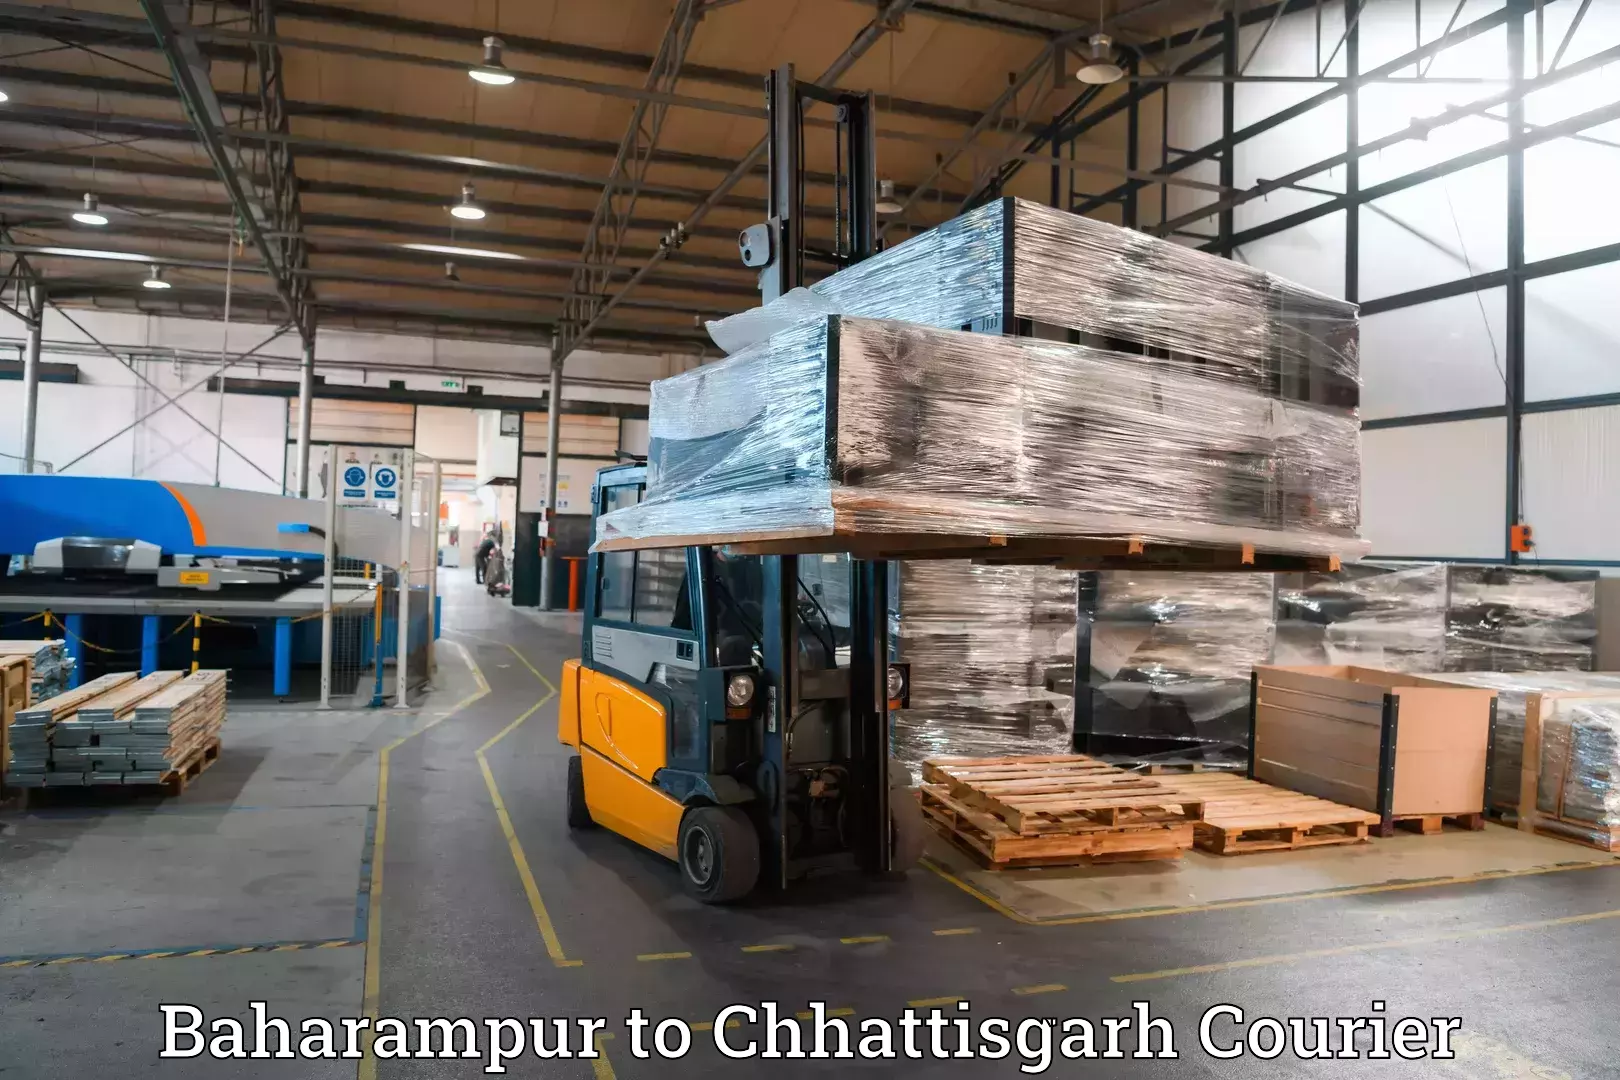 Luggage transport consultancy Baharampur to Sakti